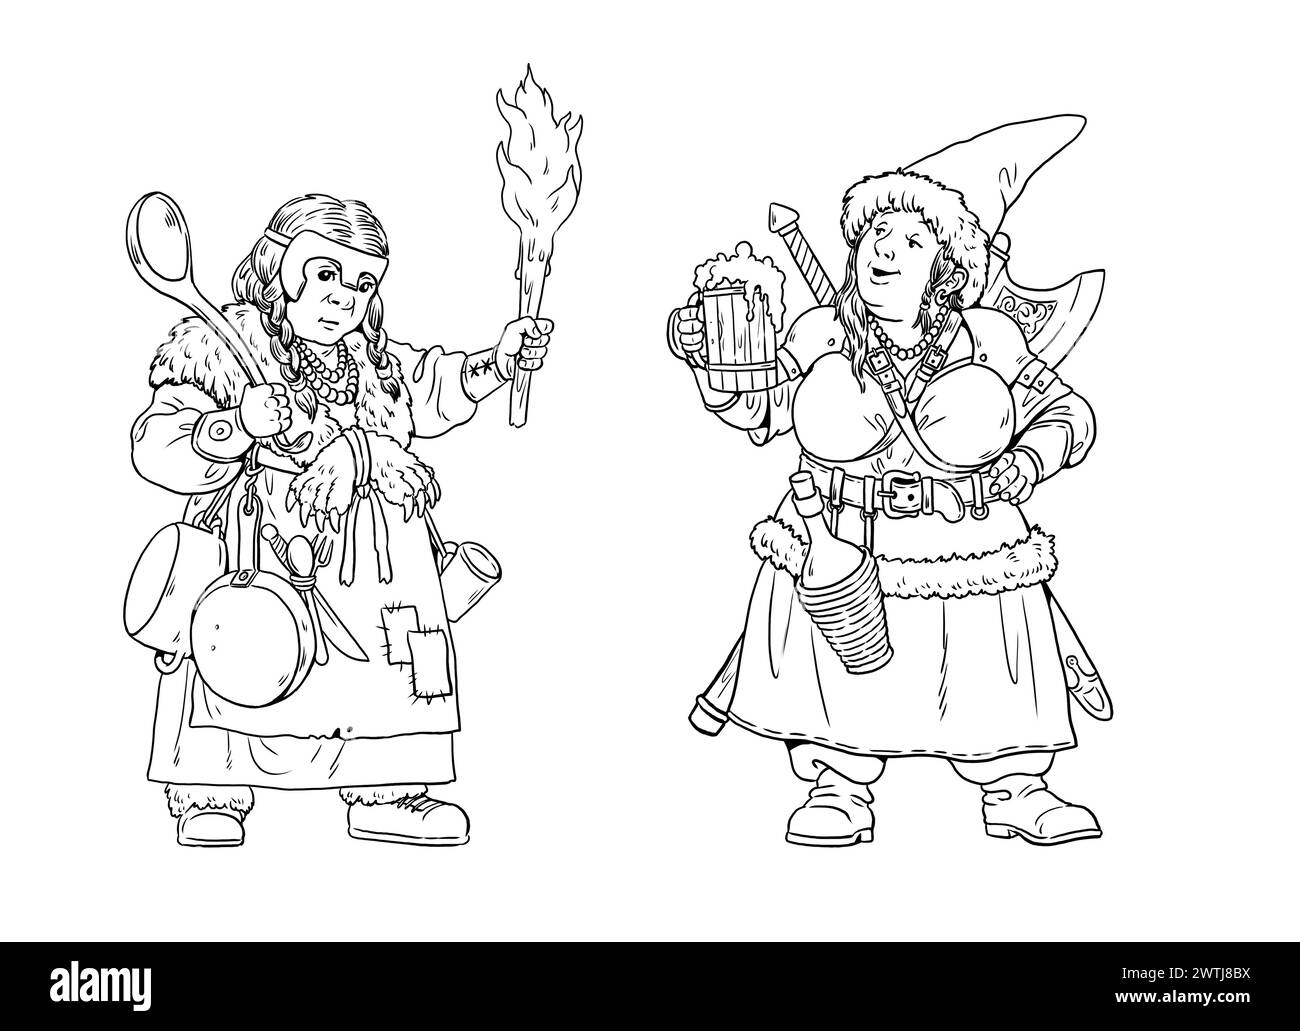 Dessin avec deux naines de guerre féminines. Personnages fantastiques drôles à colorier. Banque D'Images